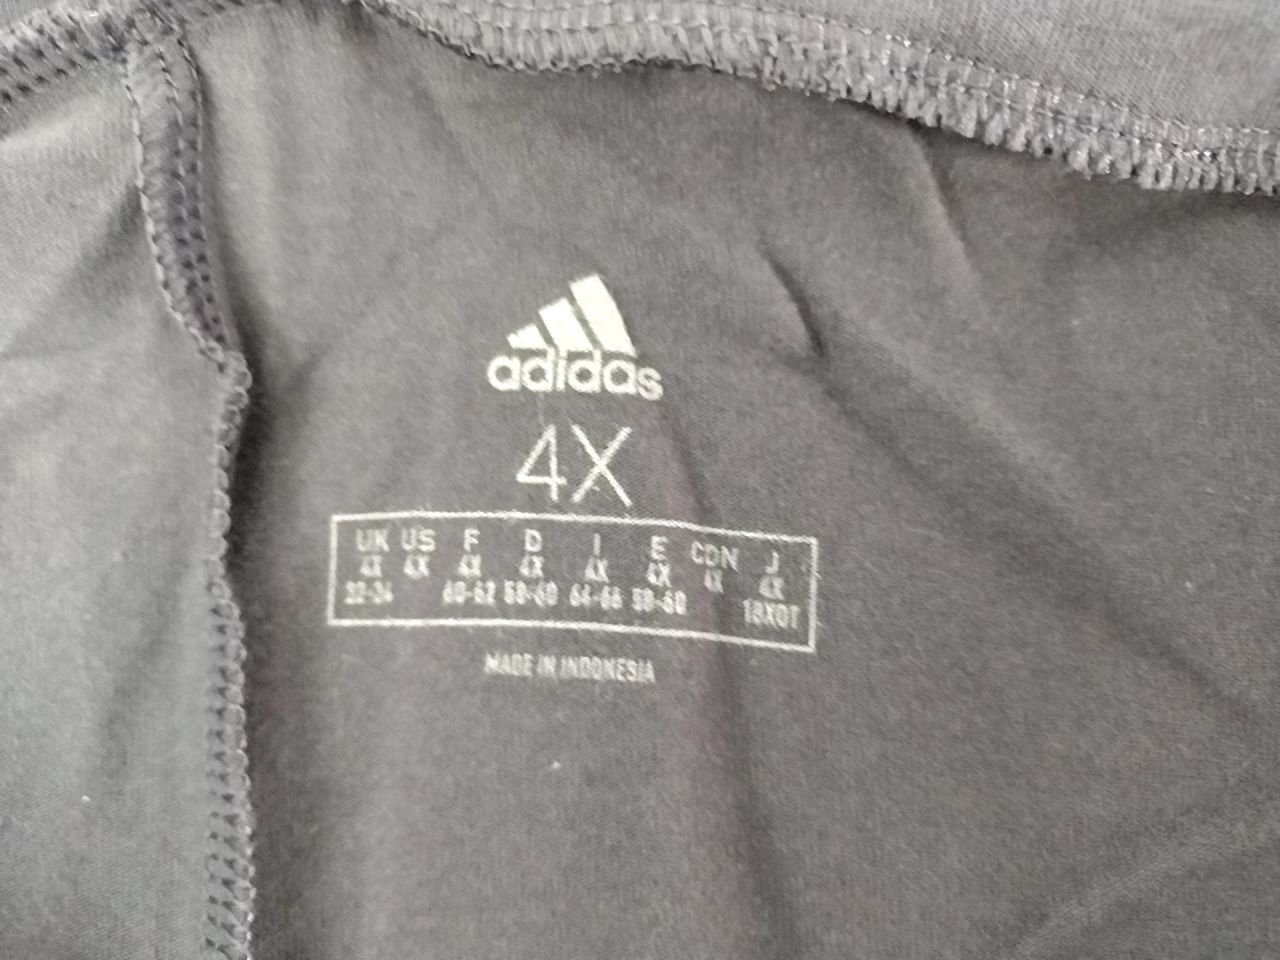 Sportovní dámské legíny Adidas vel. 4X